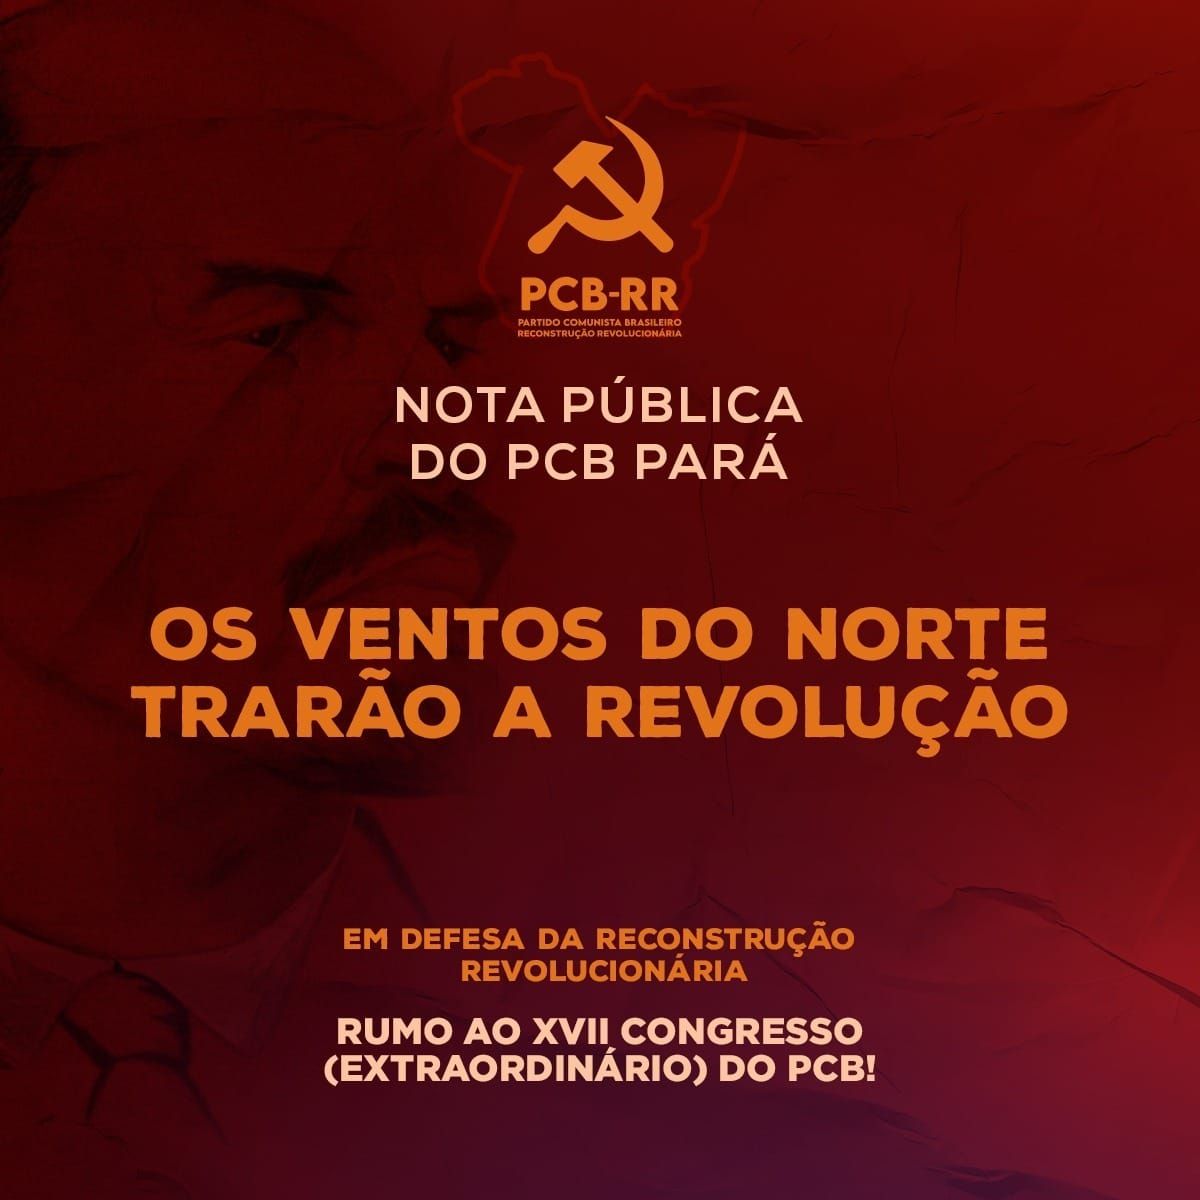 Pará: Os ventos do norte trarão a revolução!